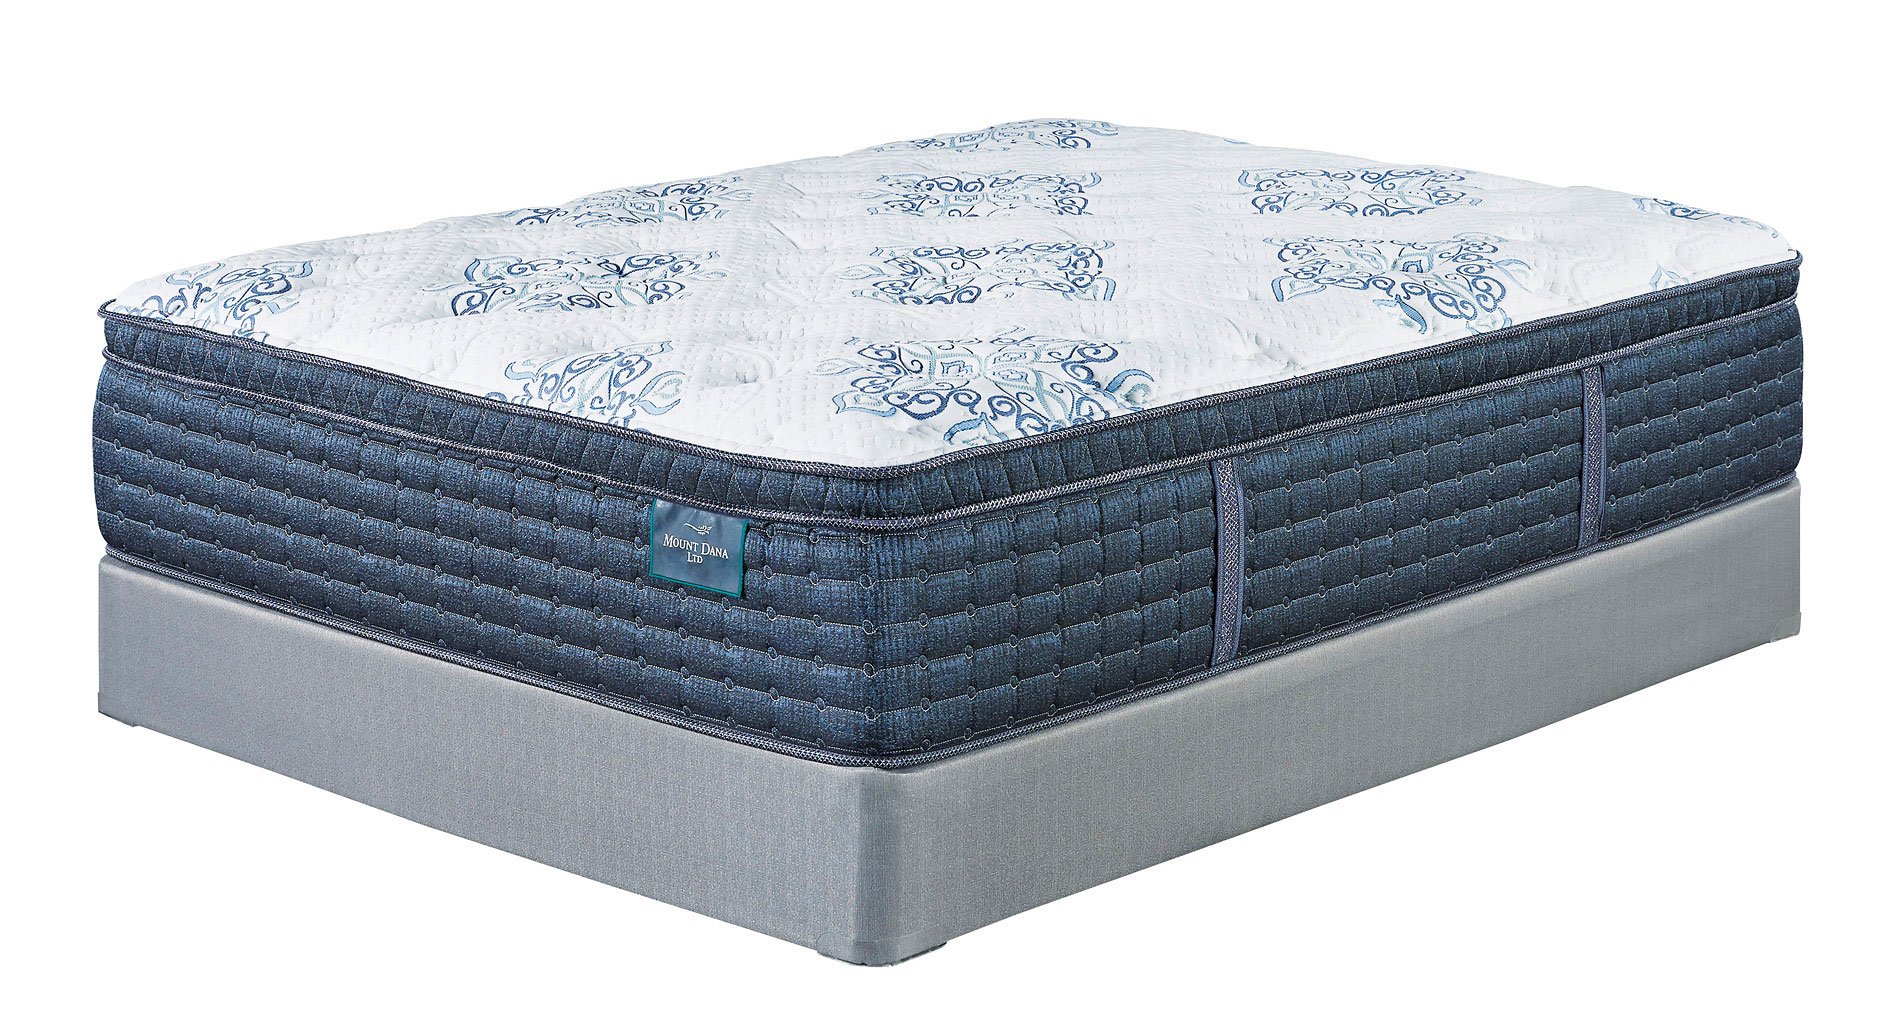 mount dana firm mattress